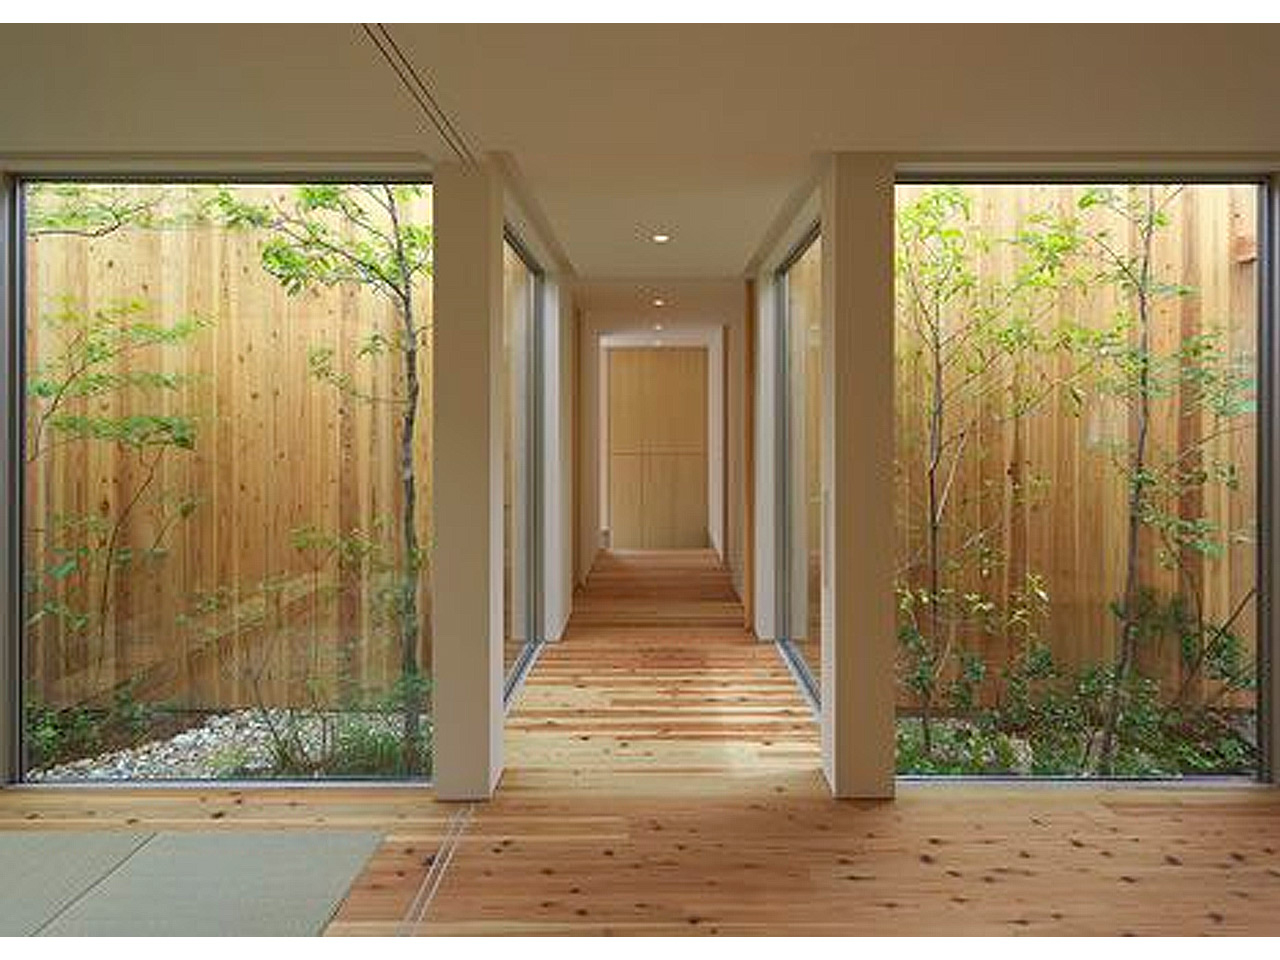 Tus 7 Inspiraciones De Decoración De Terrazas Interiores ... concernant Jardin Interior Zen